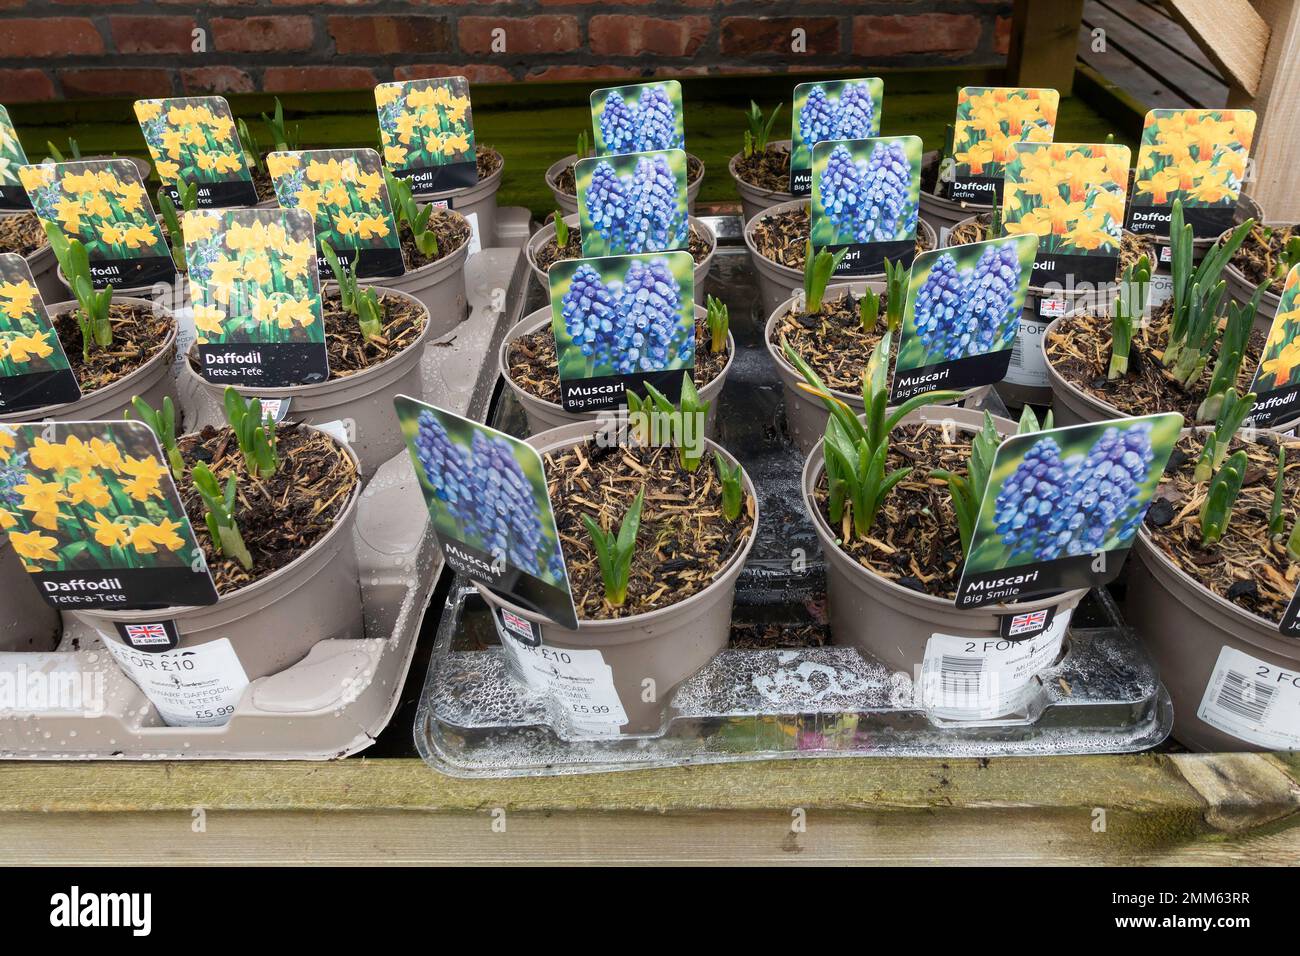 Fiori primaverili in vendita per la piantagione, Daffodils Tete a Tete e Muscari Big Smile Foto Stock